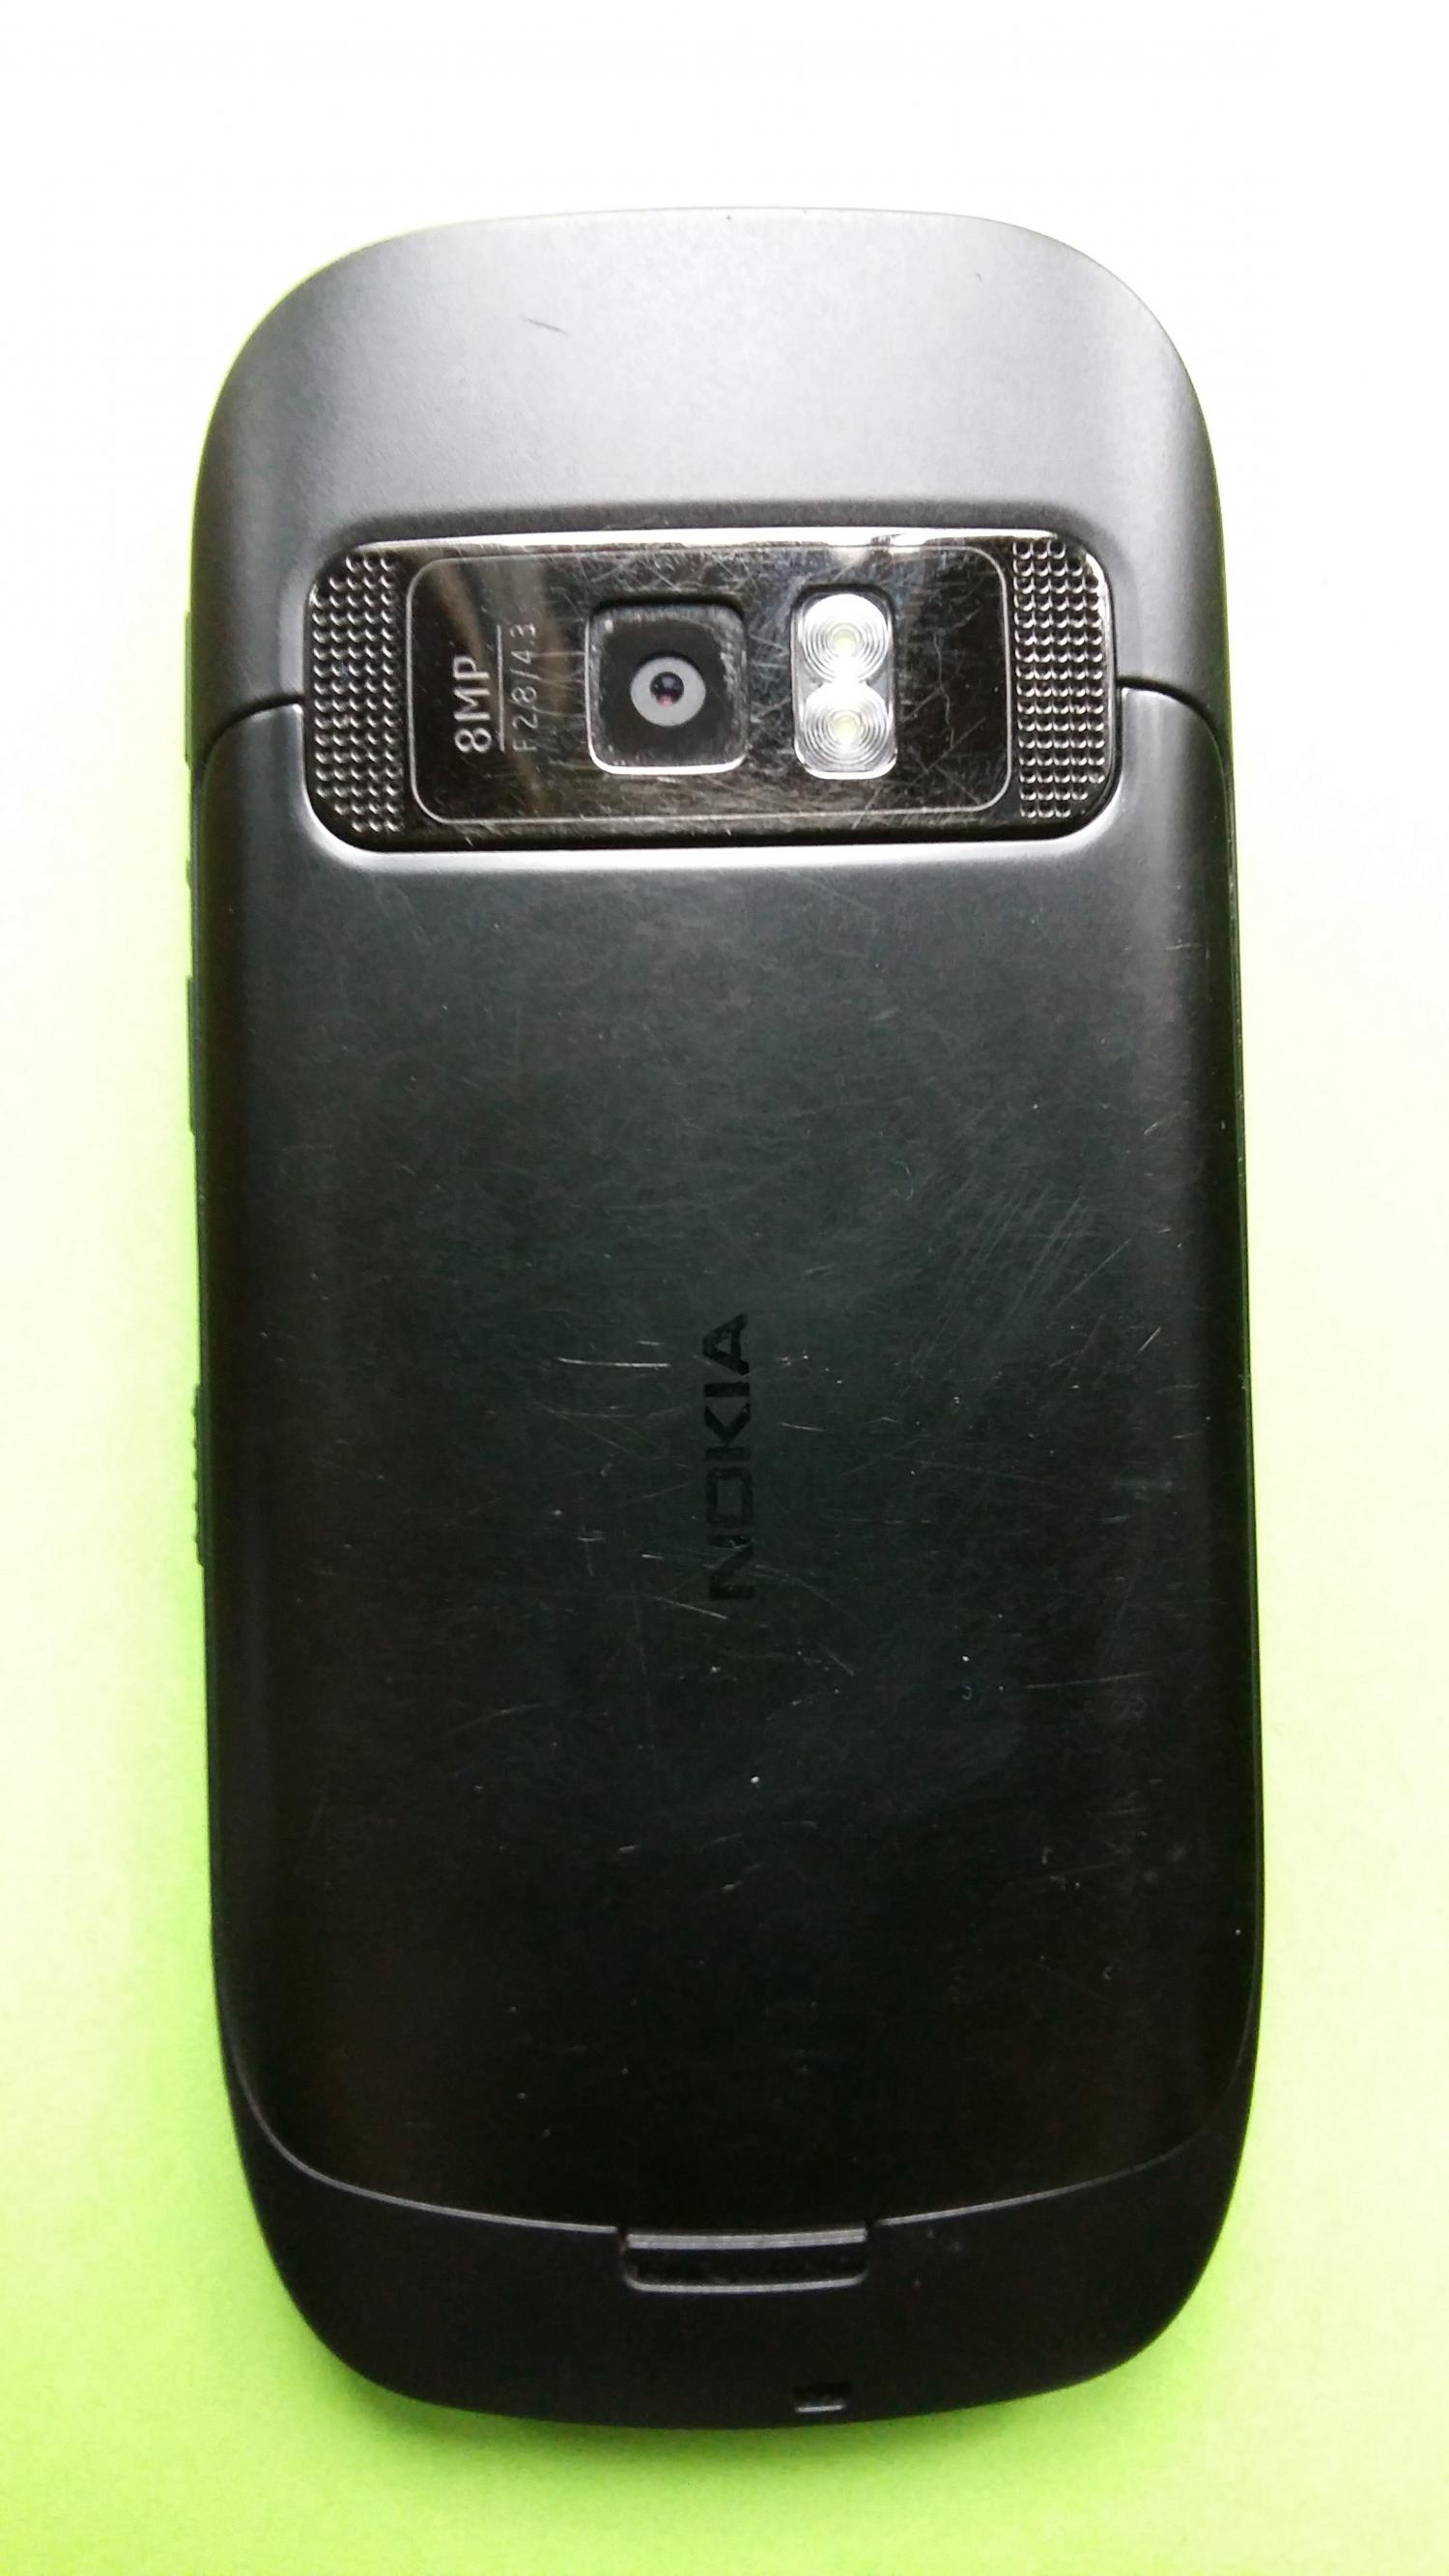 image-7308717-Nokia C7-00 (2)2.jpg